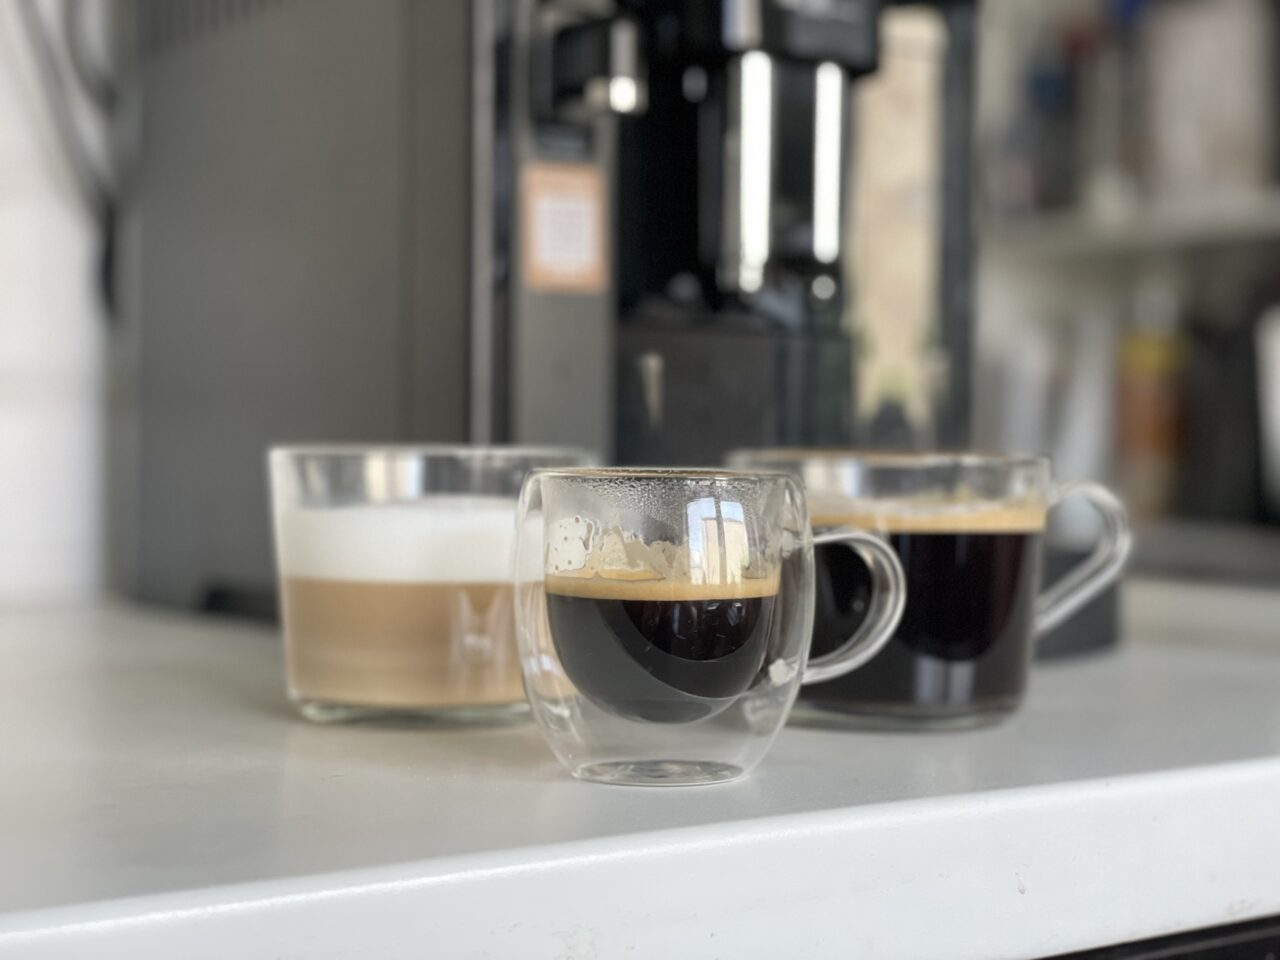 Trzy filiżanki z kawą o różnych konsystencjach na blacie kuchennym z ekspres do kawy w tle.